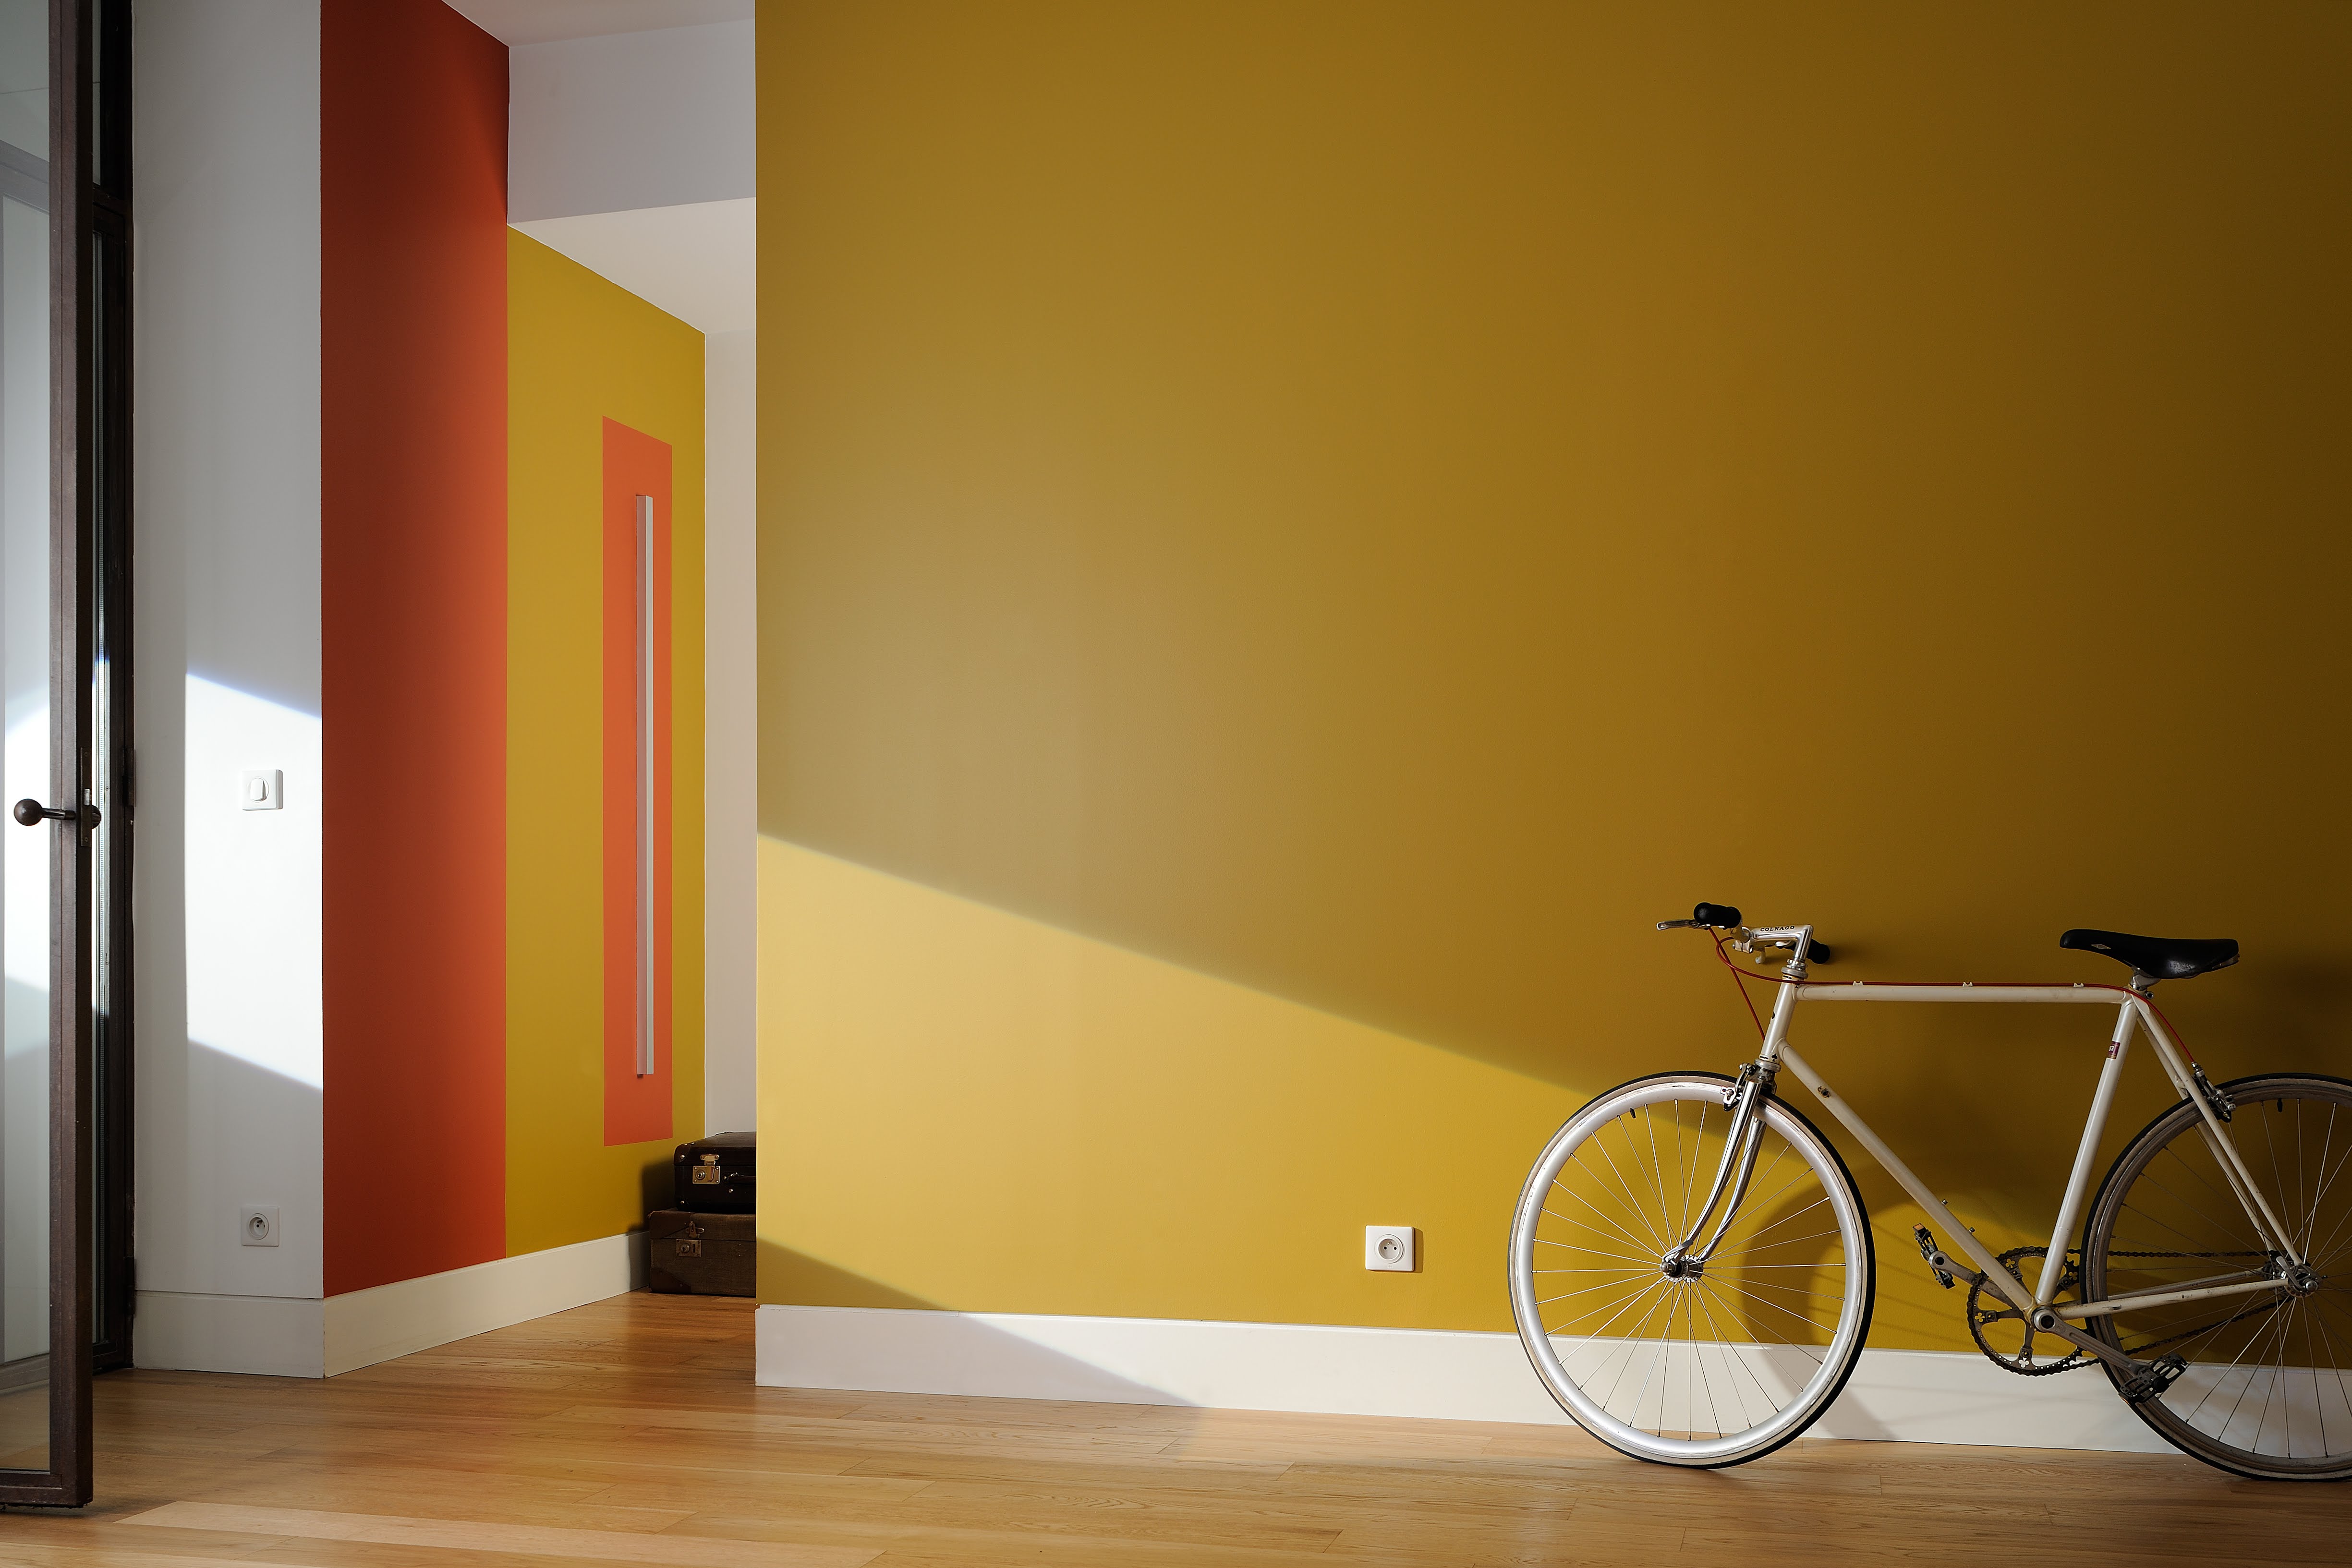 Entrée ou couloir réalisé(e) avec de la peinture intérieure dans les tons de jaunes et oranges